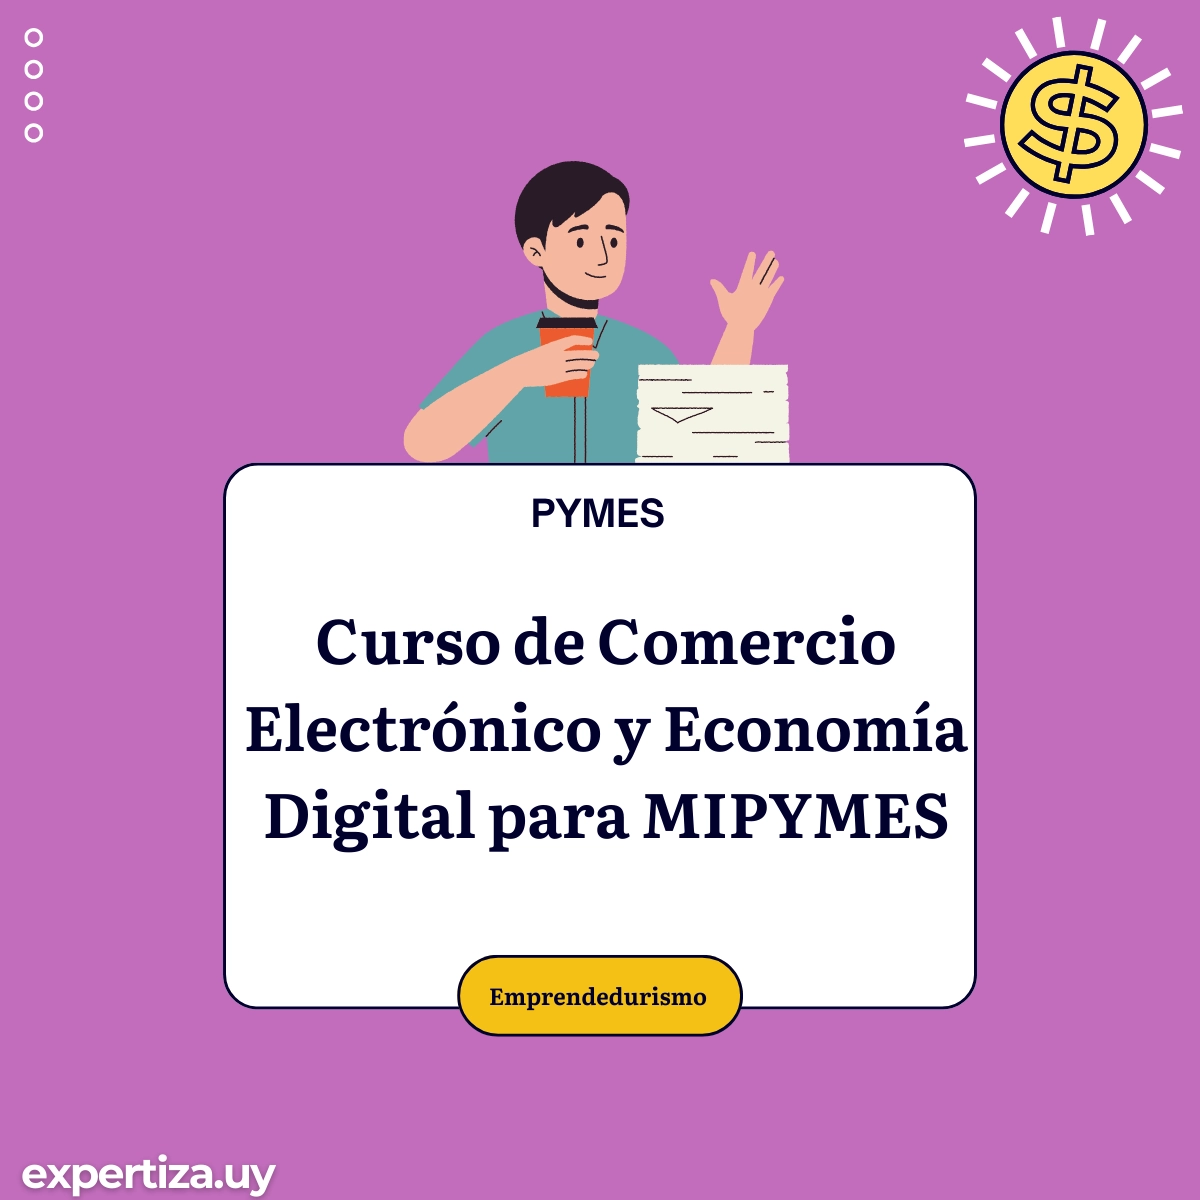 Curso de Comercio Electrónico y Economía Digital para MIPYMES.